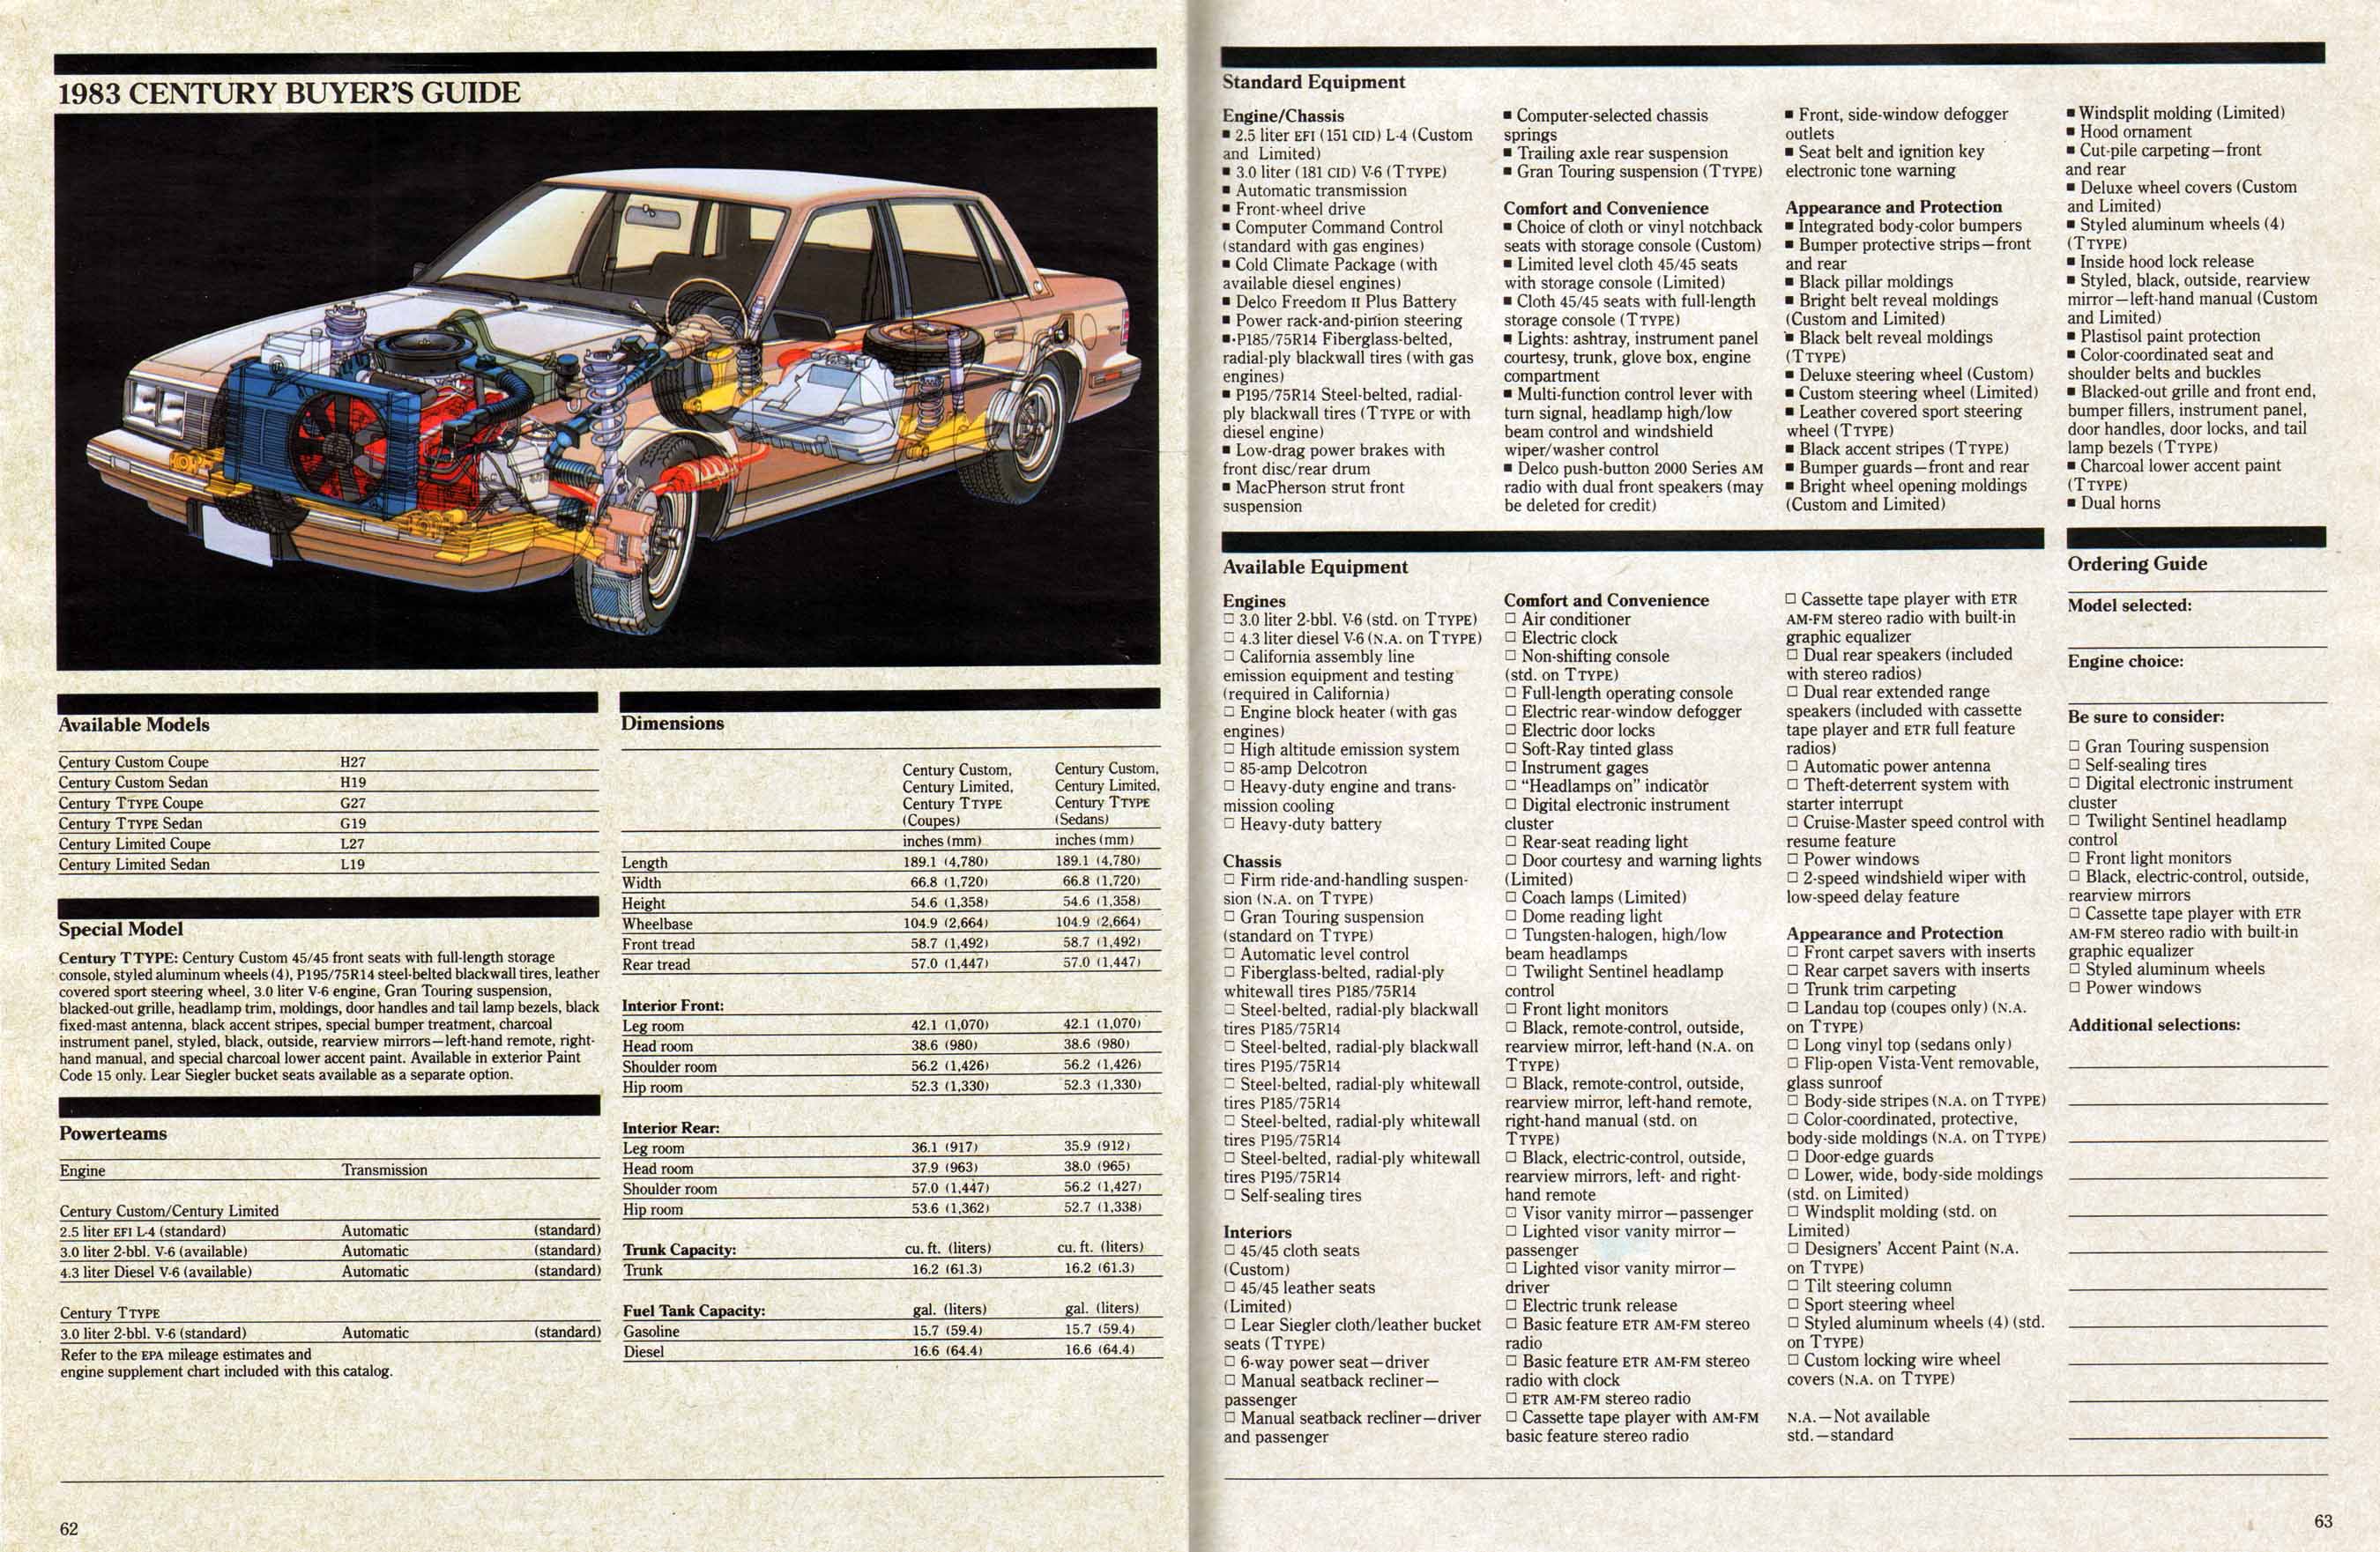 1983 Buick Full Line Prestige-62-63